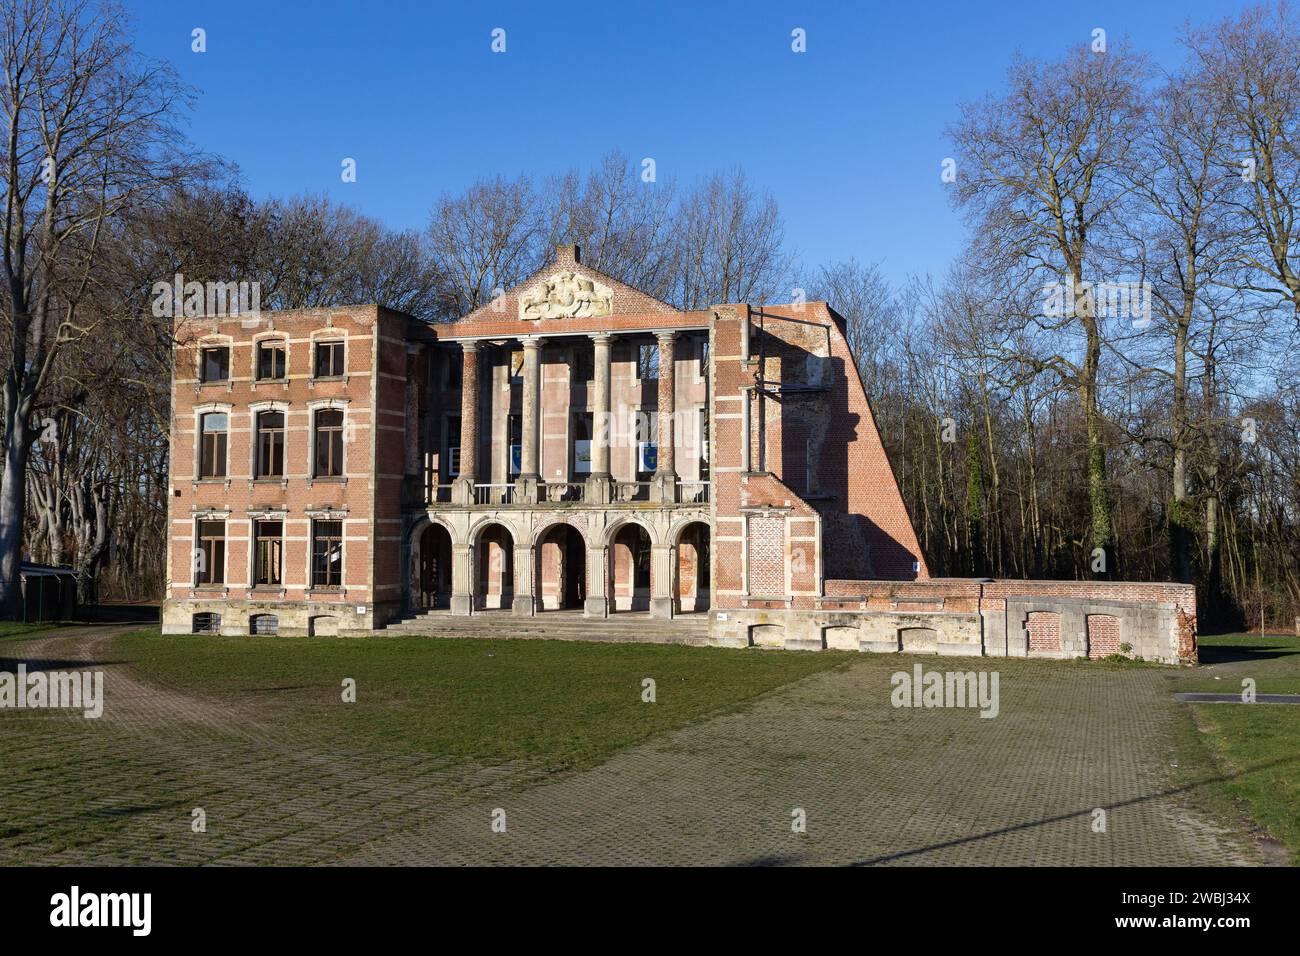 Blick auf den öffentlichen Park, den Mesen Park in Lede, Belgien, mit den Resten der Fassade des staatlichen Schlosses Mesen, von dem der Rest abgerissen wurde Stockfoto